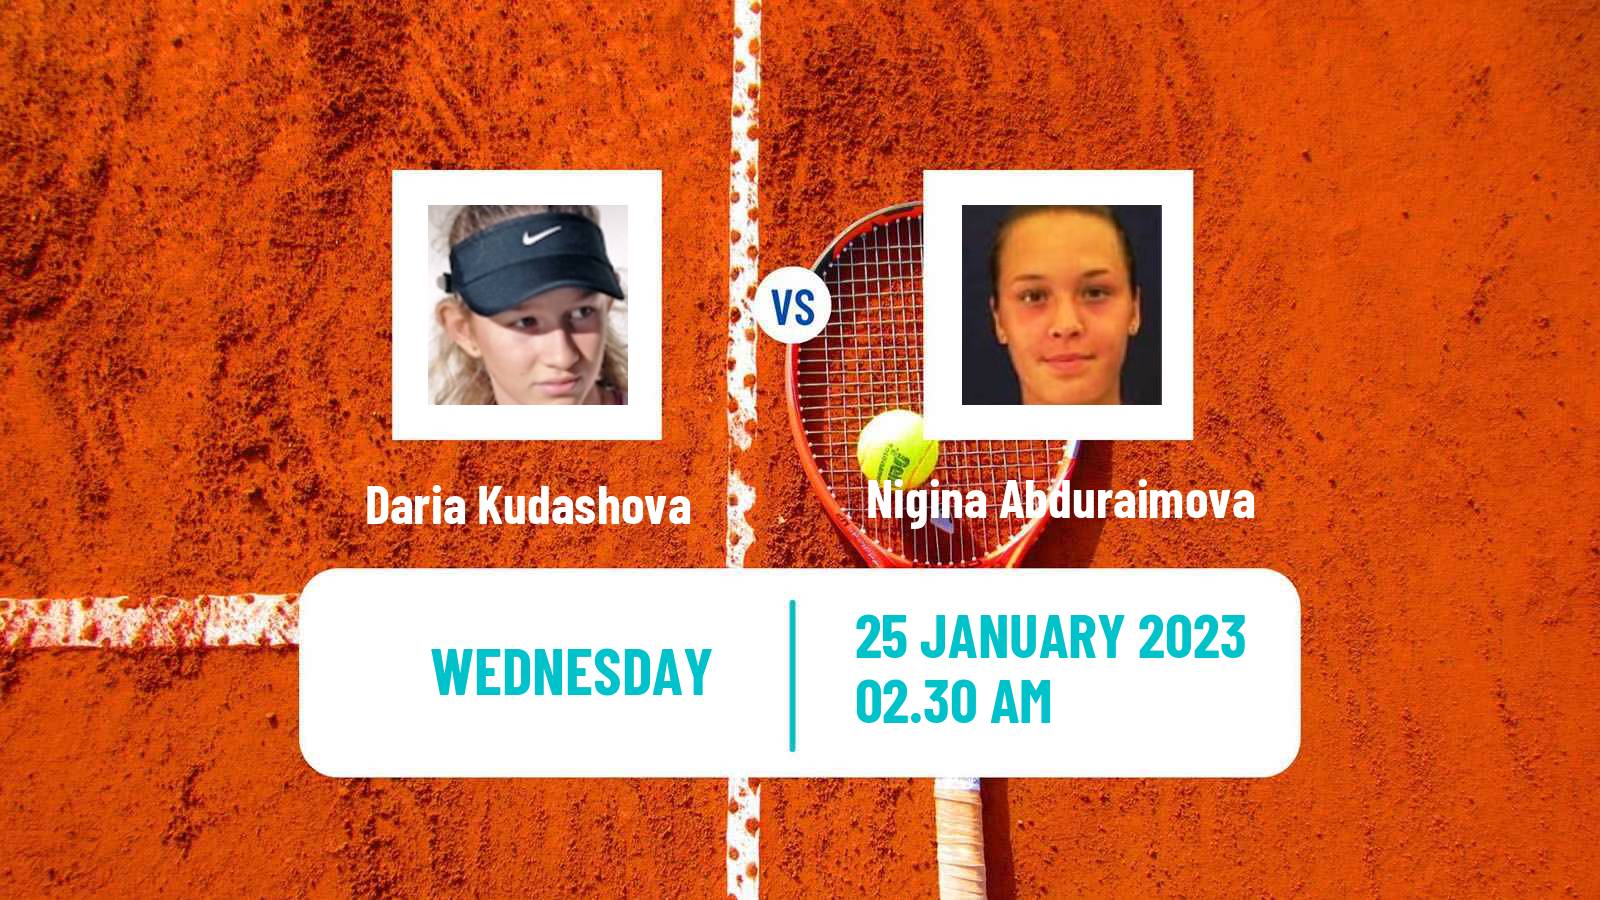 Tennis ITF Tournaments Daria Kudashova - Nigina Abduraimova